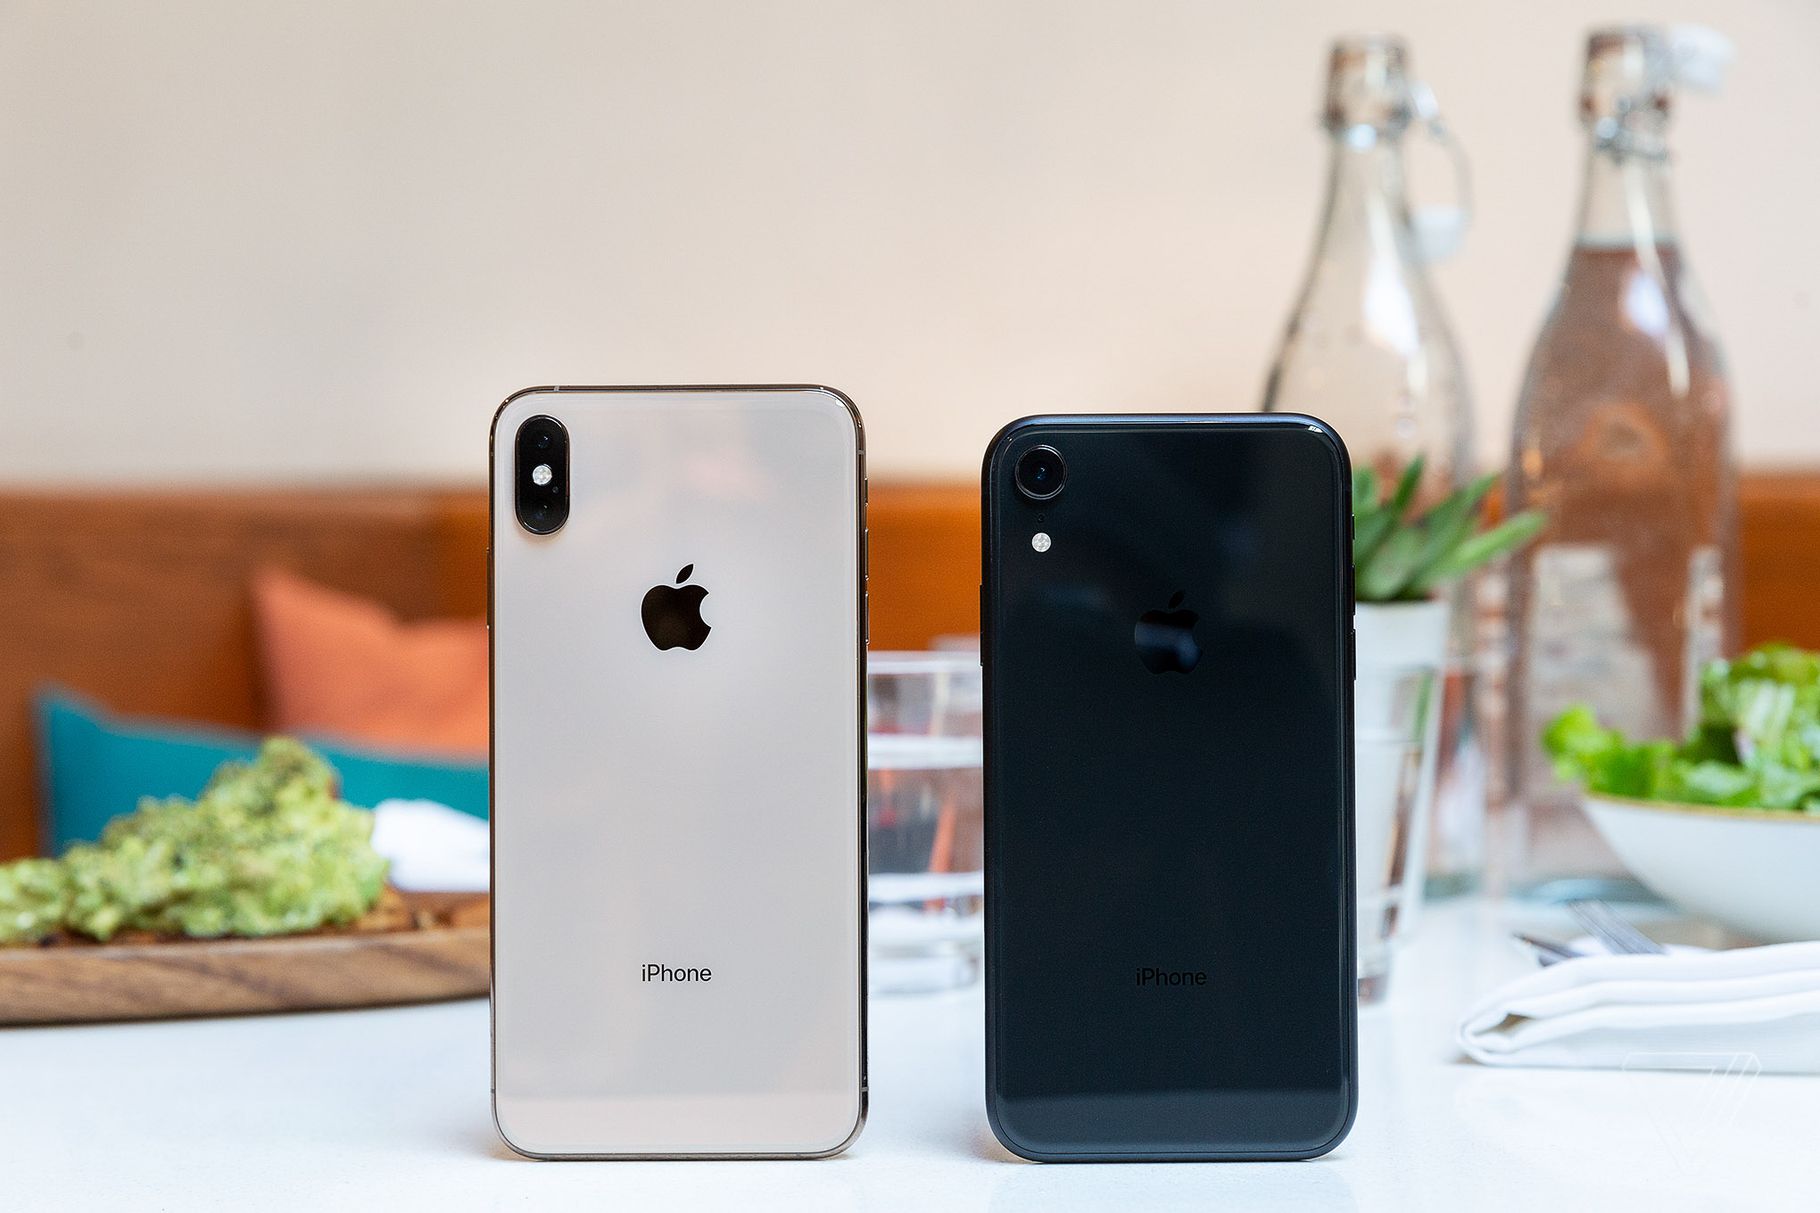 Apple เตรียมเปิดตัว iPhone รุ่นใหม่สามรุ่น พร้อมกล้อง 3 ตัว!